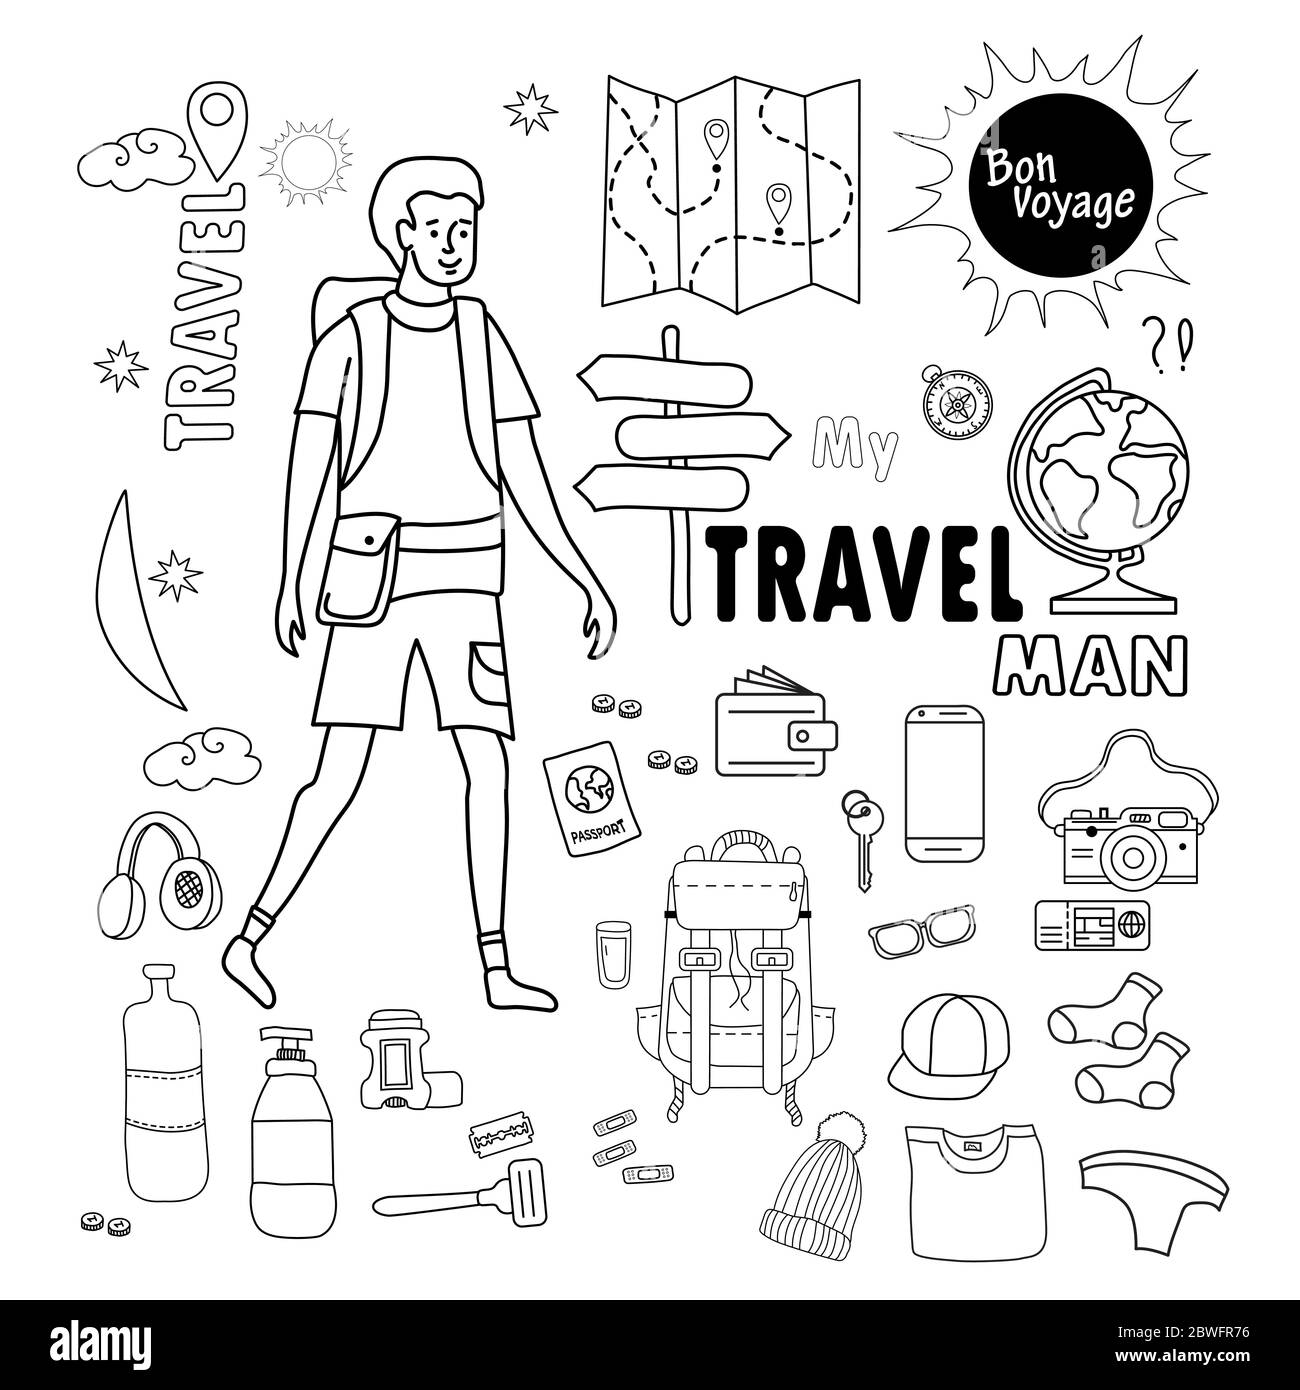 uomo turistico. Doodle materiale di viaggio per gli uomini. Set di immagini viaggio e vacanza - bagagli, cose, vestiti e scarpe, articoli e documenti per l'igiene. Tutto Illustrazione Vettoriale